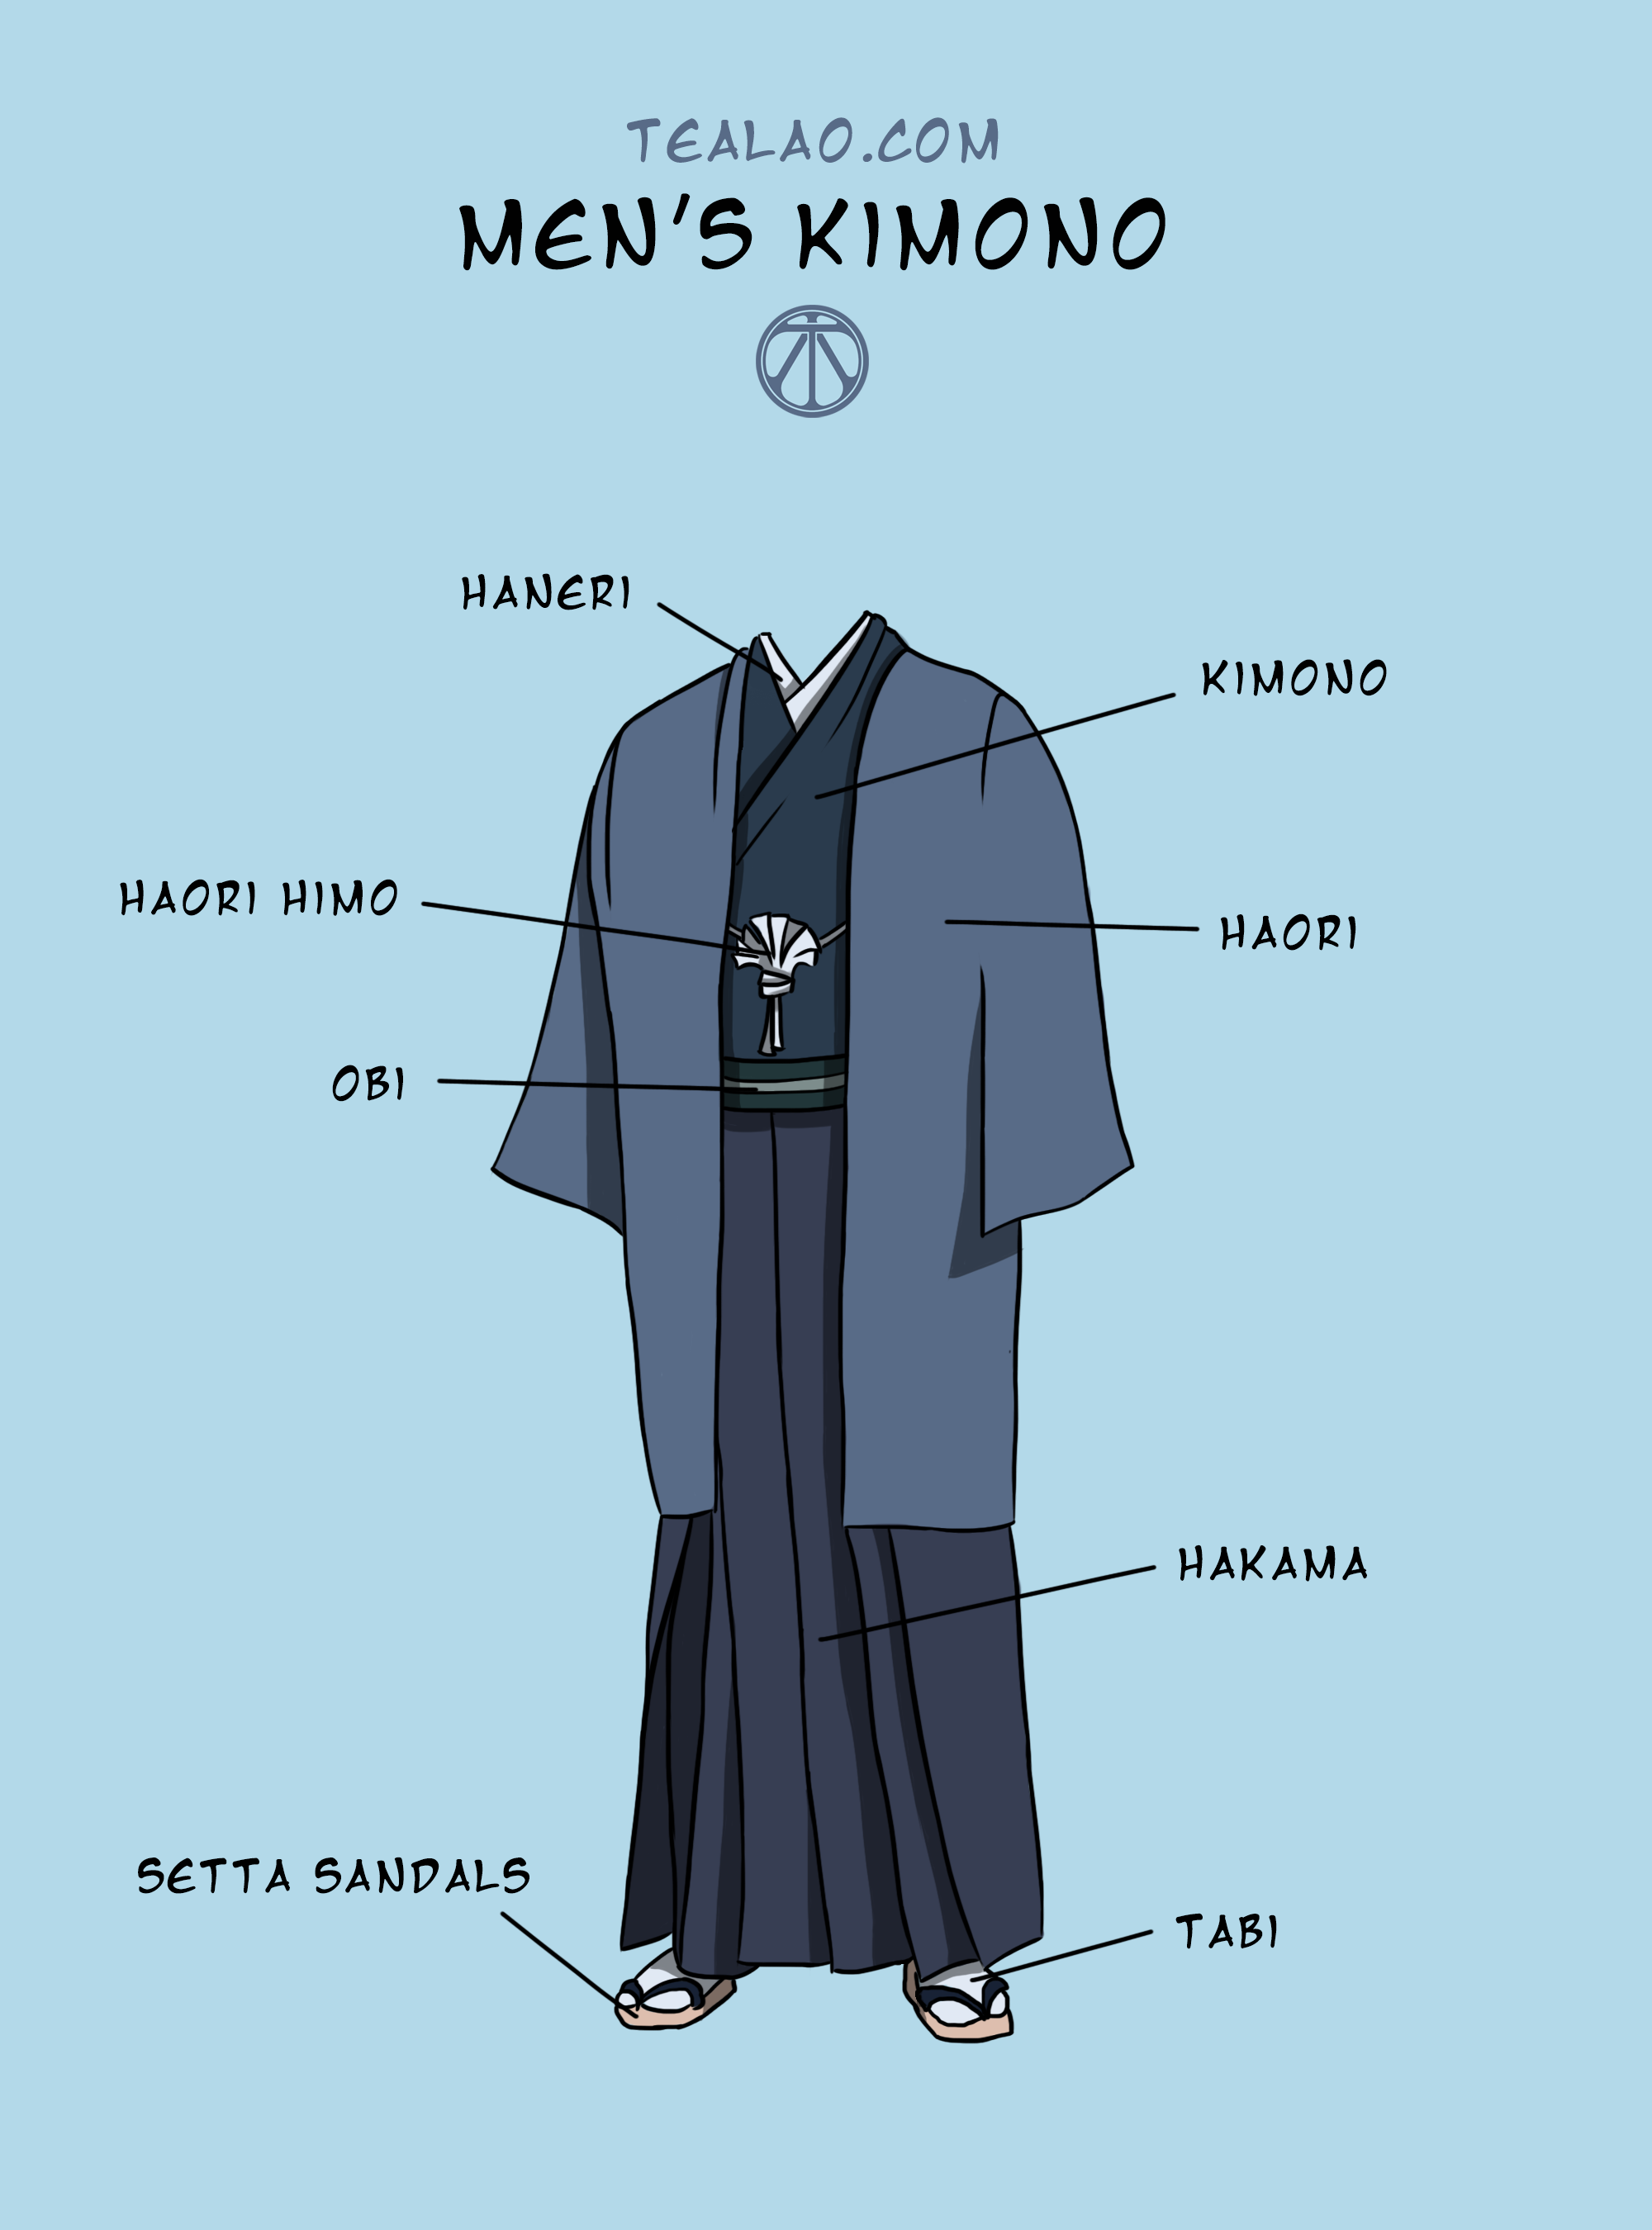 Various men's kimono information